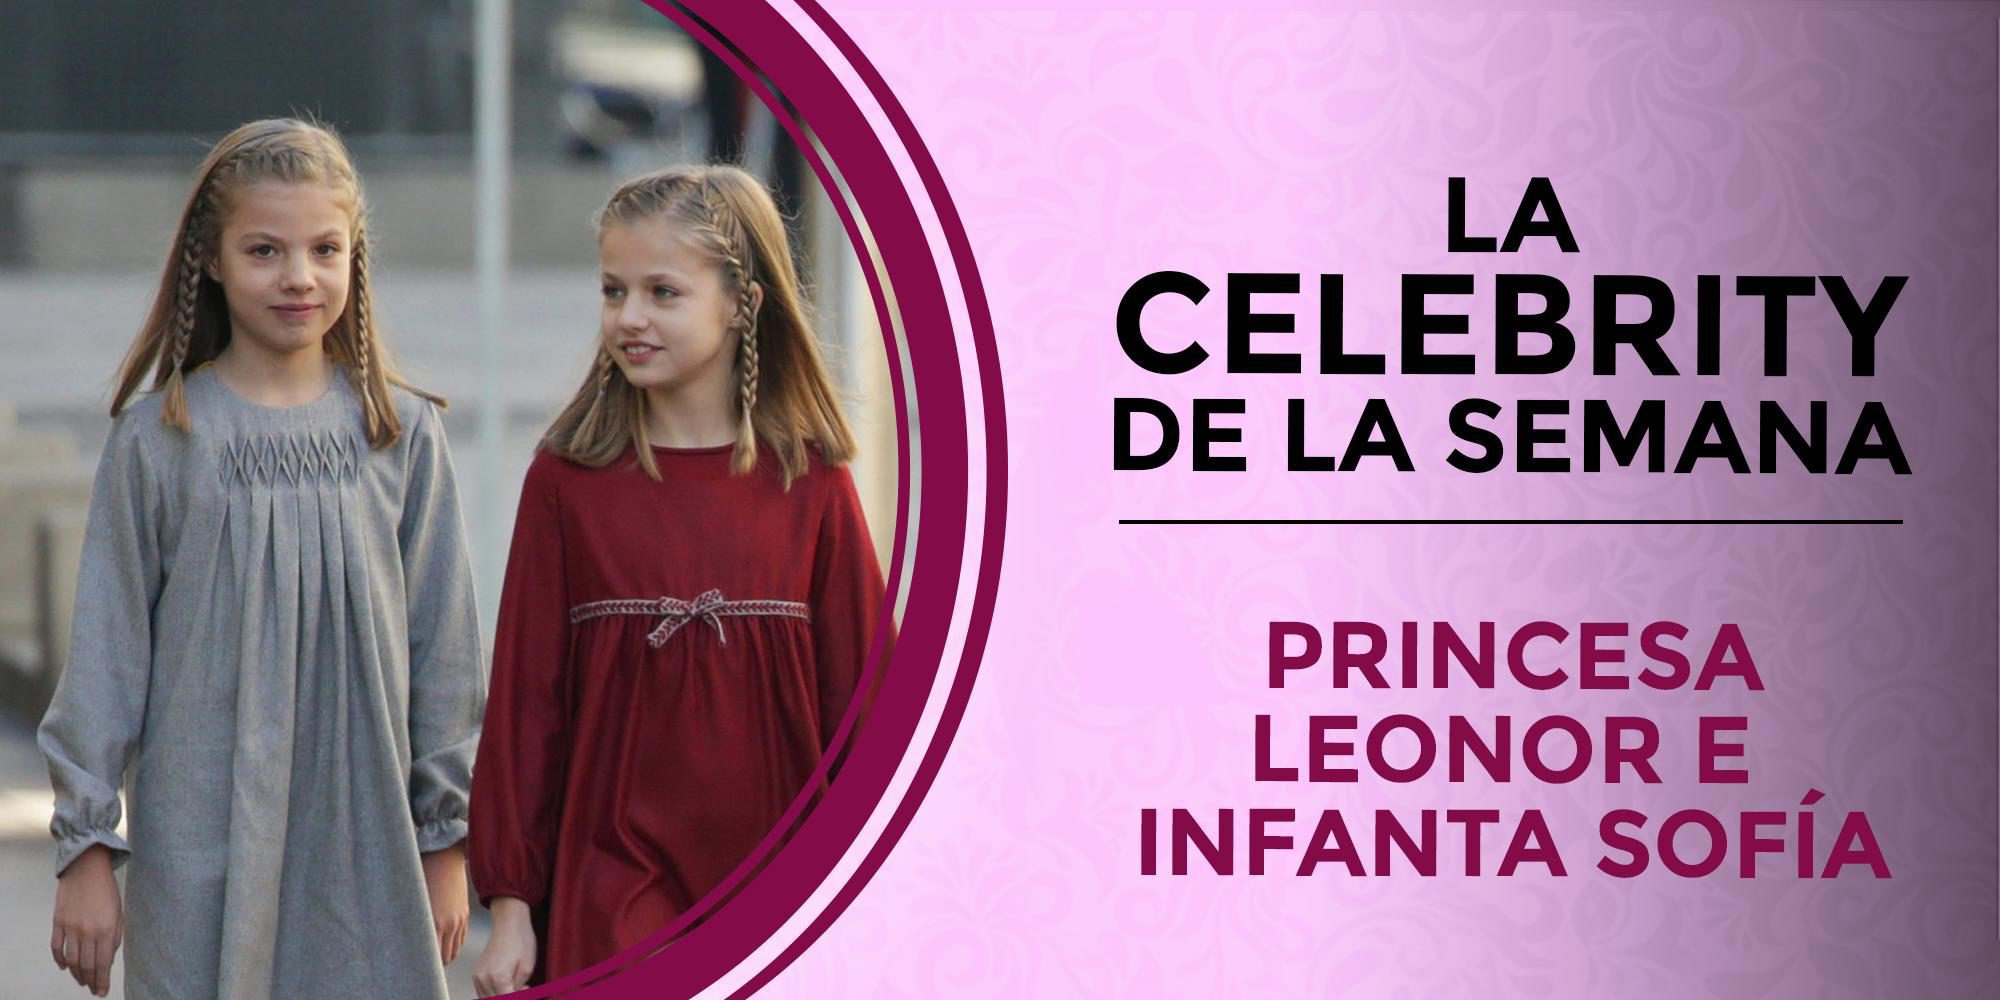 La Princesa Leonor y la Infanta Sofía, las celebs de la semana por su regreso a la vida pública